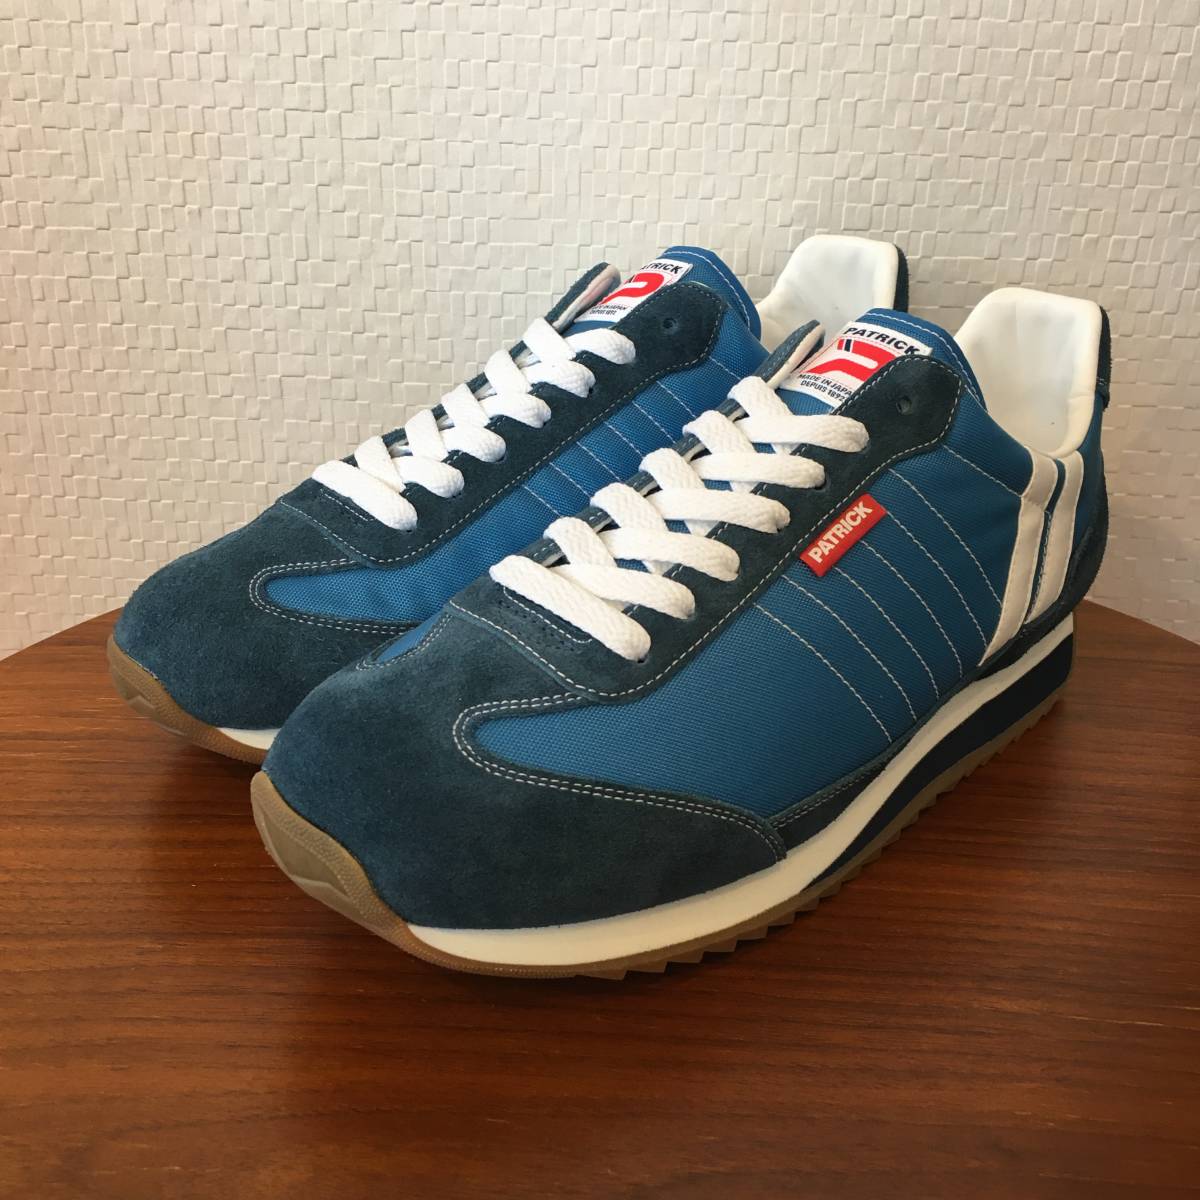 38 (24.0cm)l Patrick PATRICK марафон MARATHON AQUA aqua 94226 ограничение переиздание цвет обувь спортивные туфли сделано в Японии Japan ( новый товар )( стандартный товар )( быстрое решение )